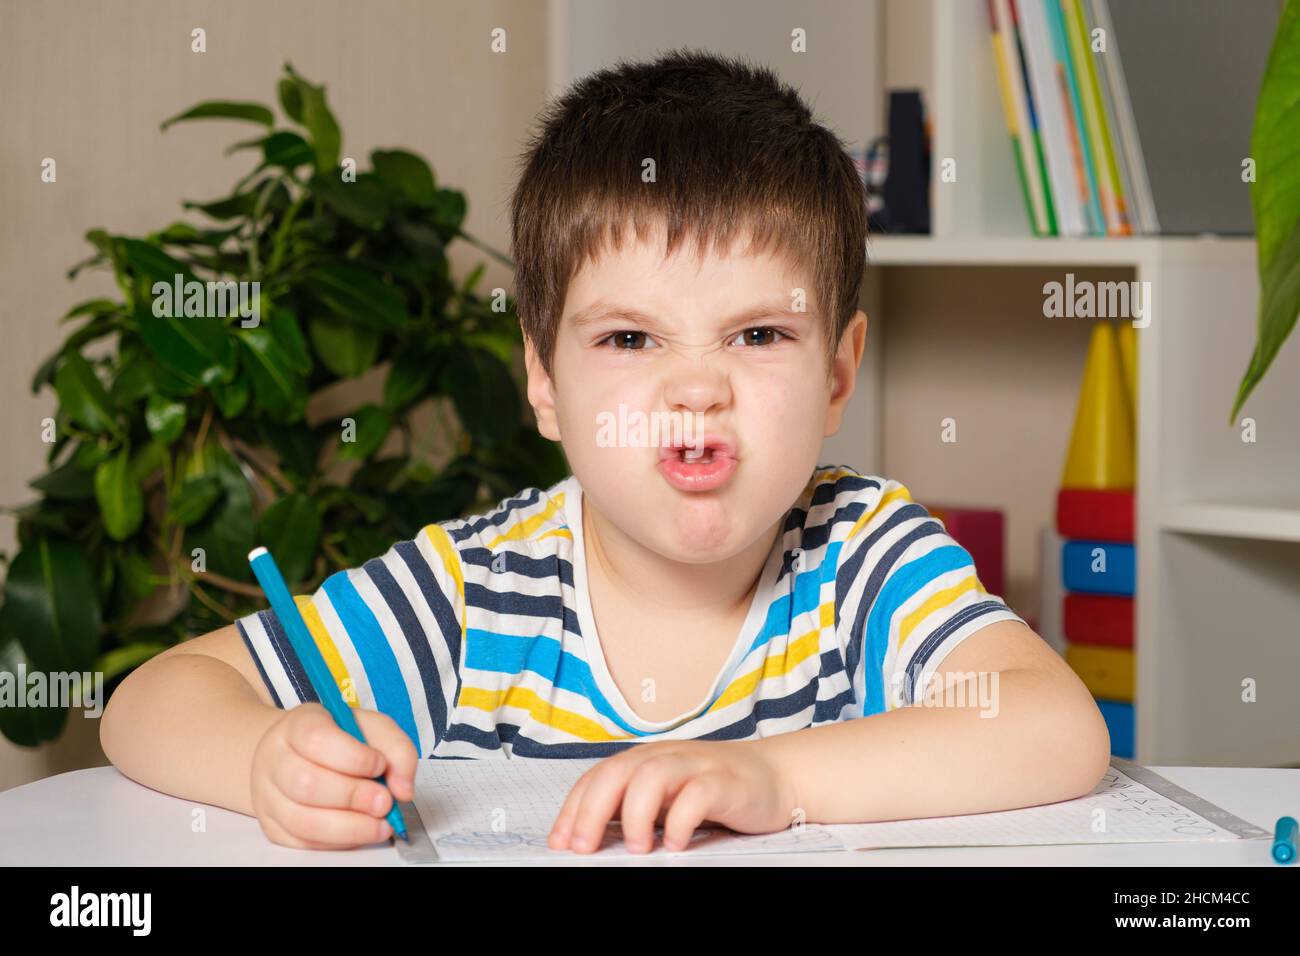 Ein hübscher Junge von 4 Jahren lernt schreiben, schaut in die Kamera und grimaces. Stockfoto